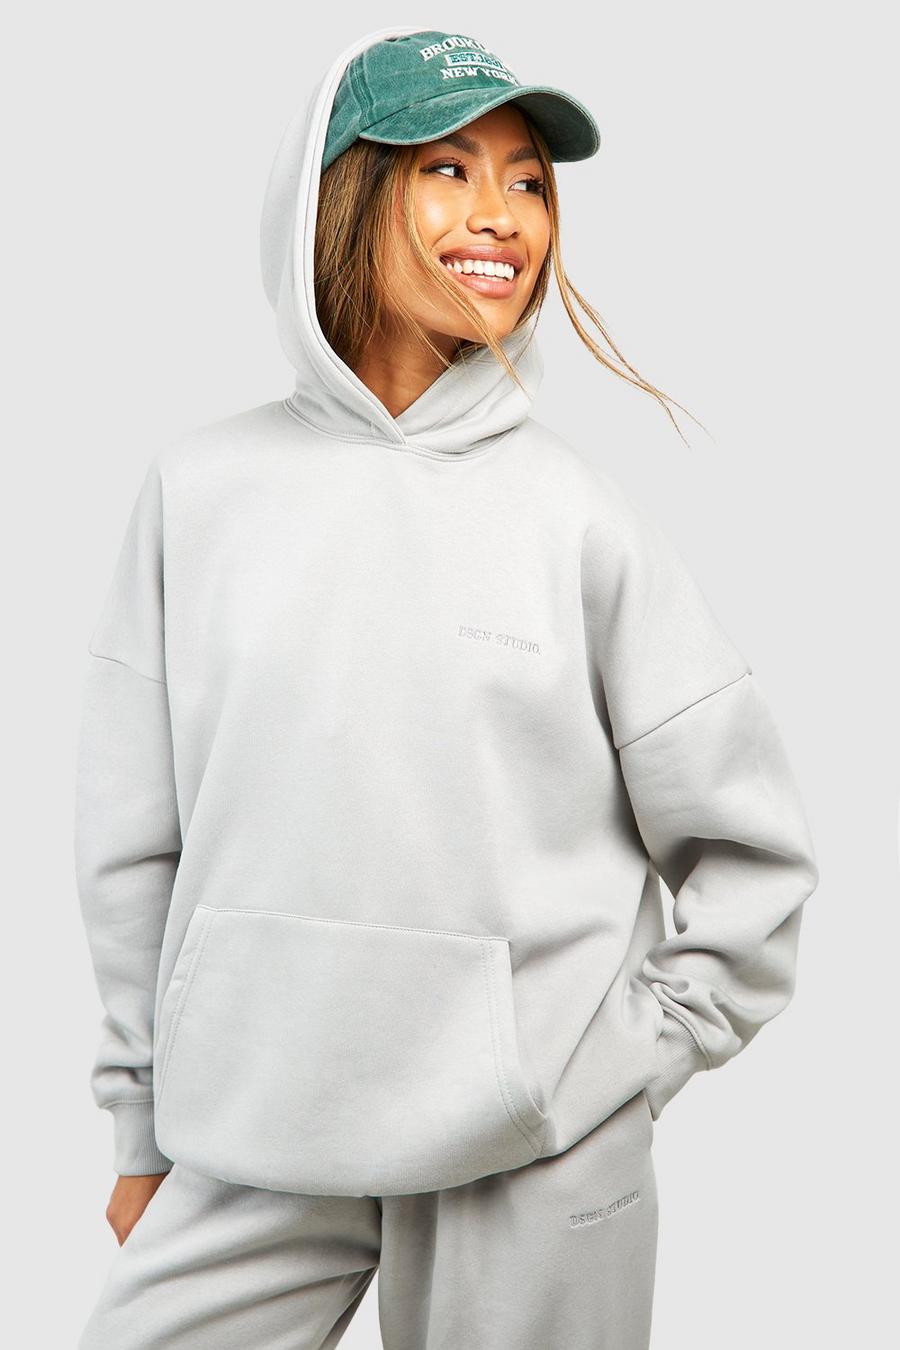 New York Hoodie  Women hoodies sweatshirts, Hoodies womens, Hoody